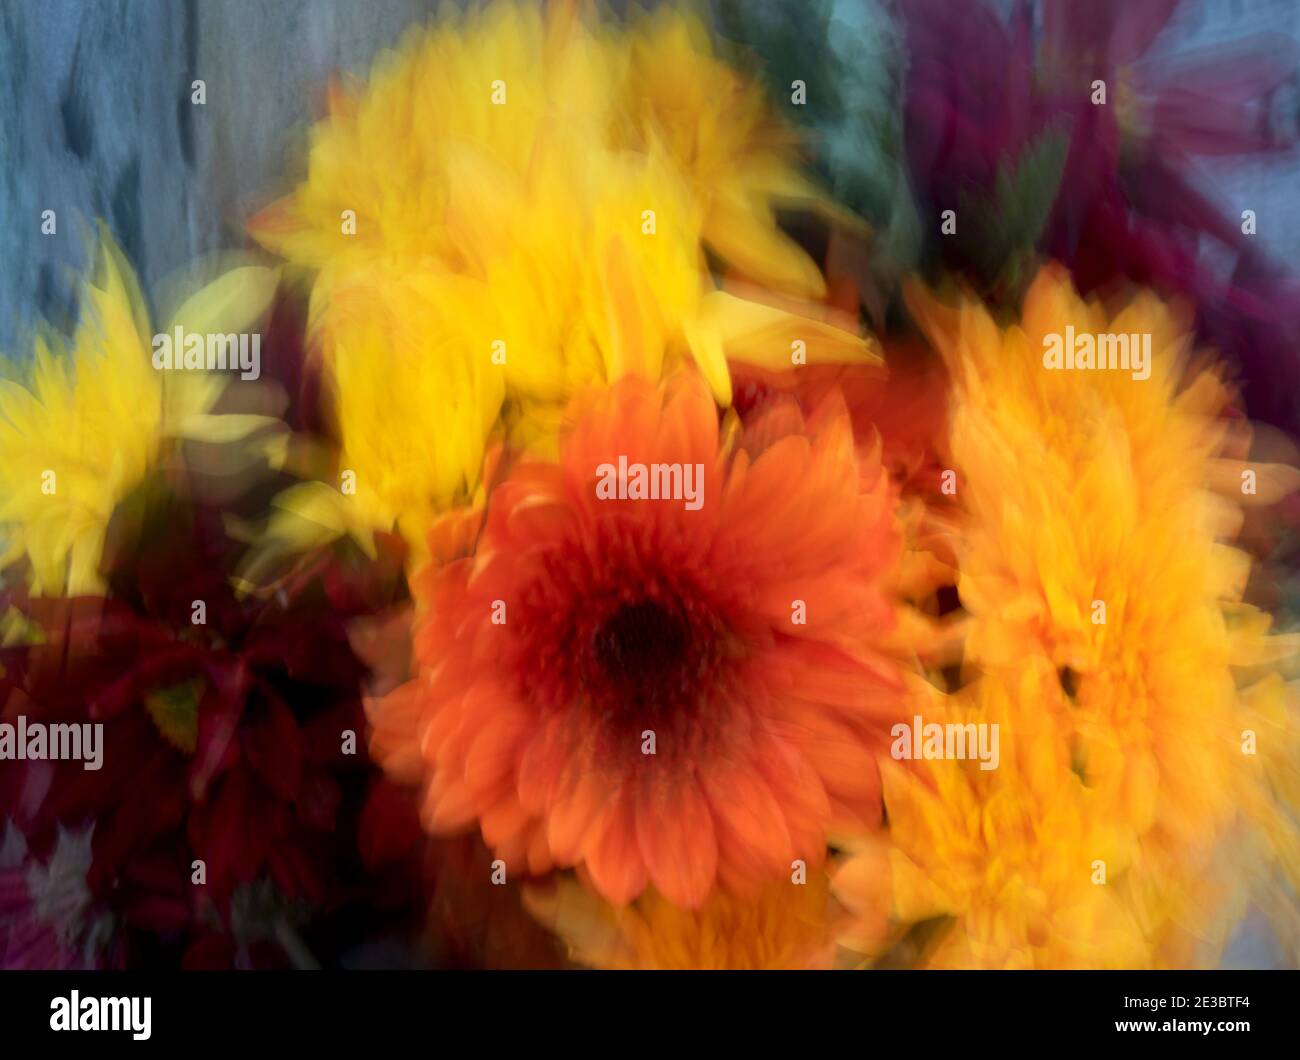 Photographie florale impressionniste - fleurs. Plusieurs images ont fusionné pour obtenir un effet artistique flou. Banque D'Images